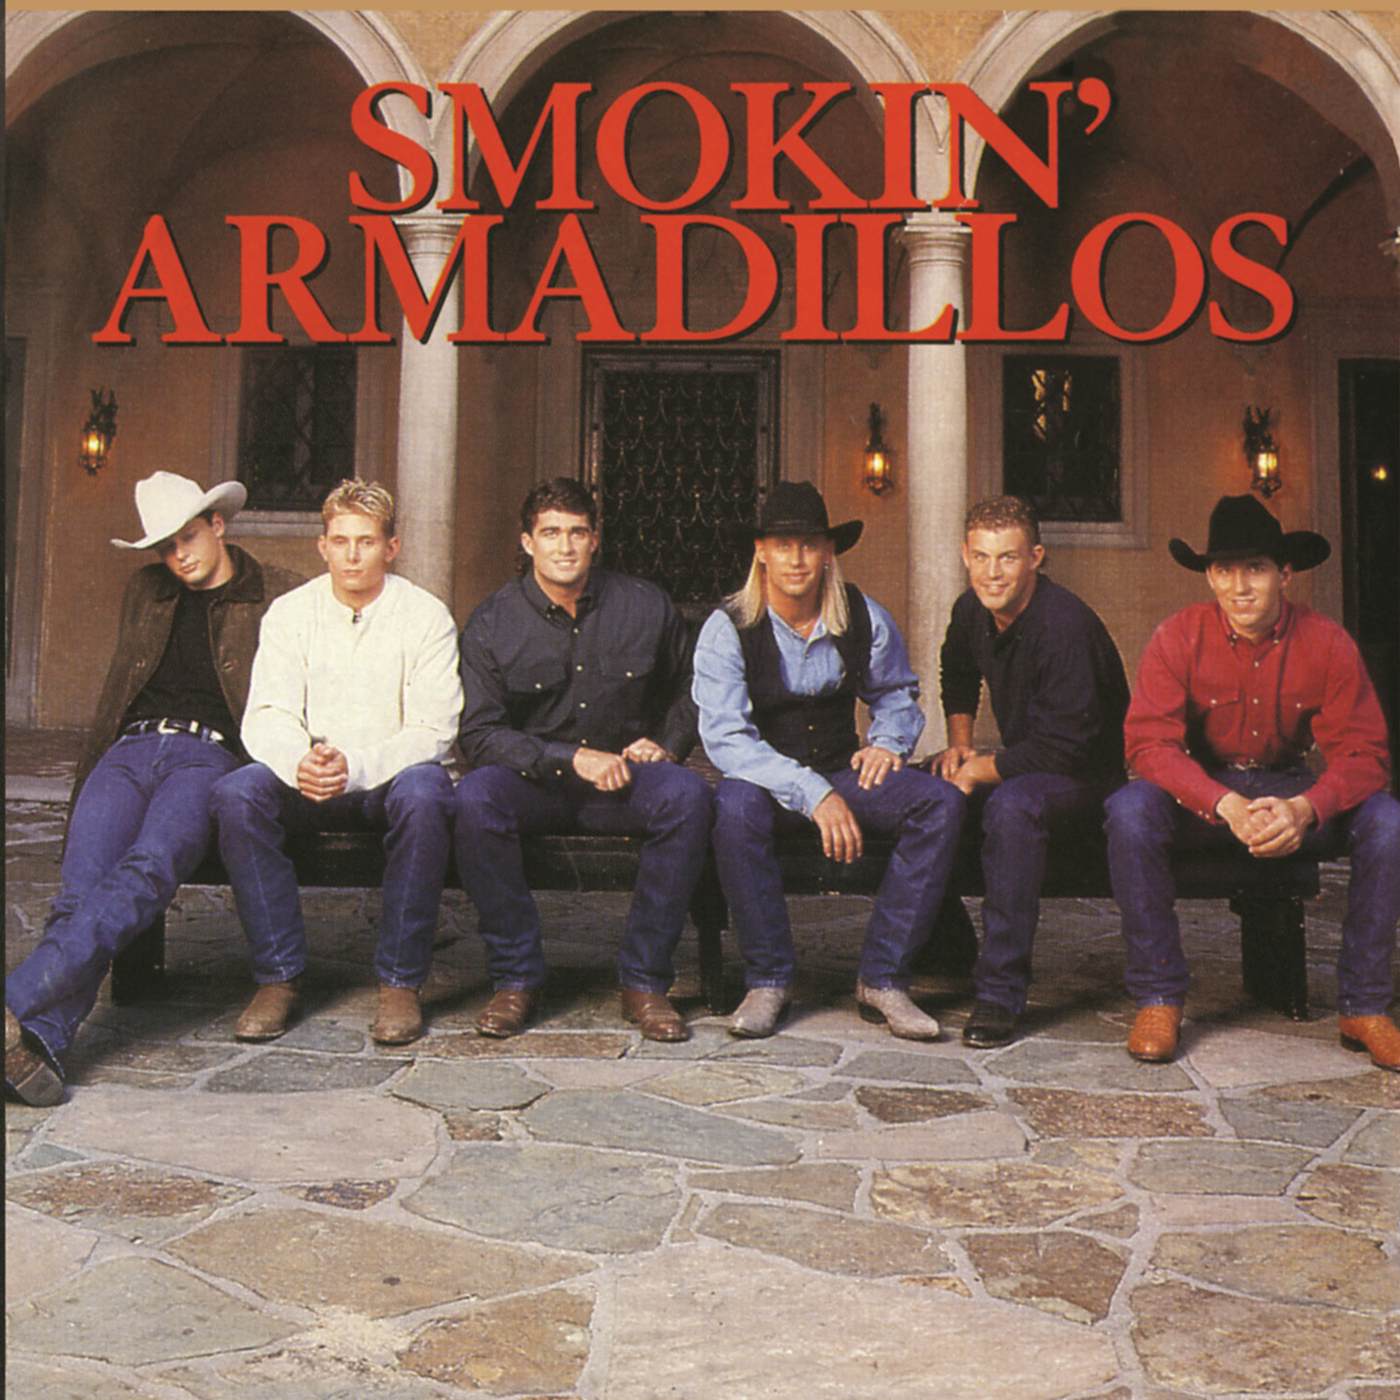 Smokin' Armadillos CD